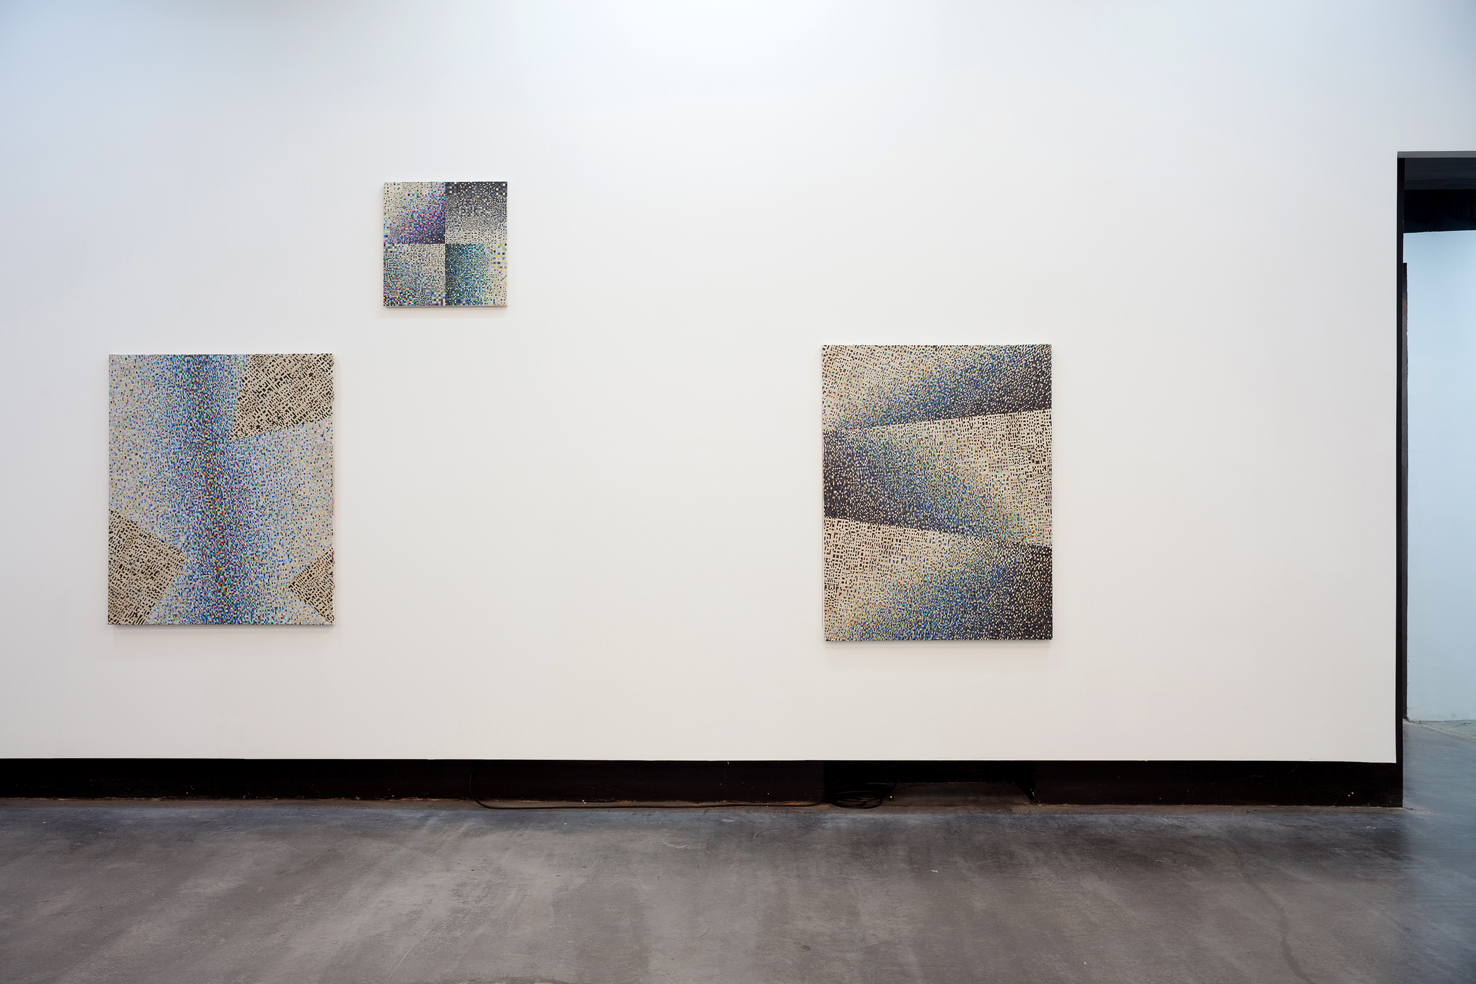  Mateusz Szczypiński, Somewhere Between - Our Matters, 2014. Widok wystawy. Dzięki uprzejmości Galerie Parrotta Contemporary Art